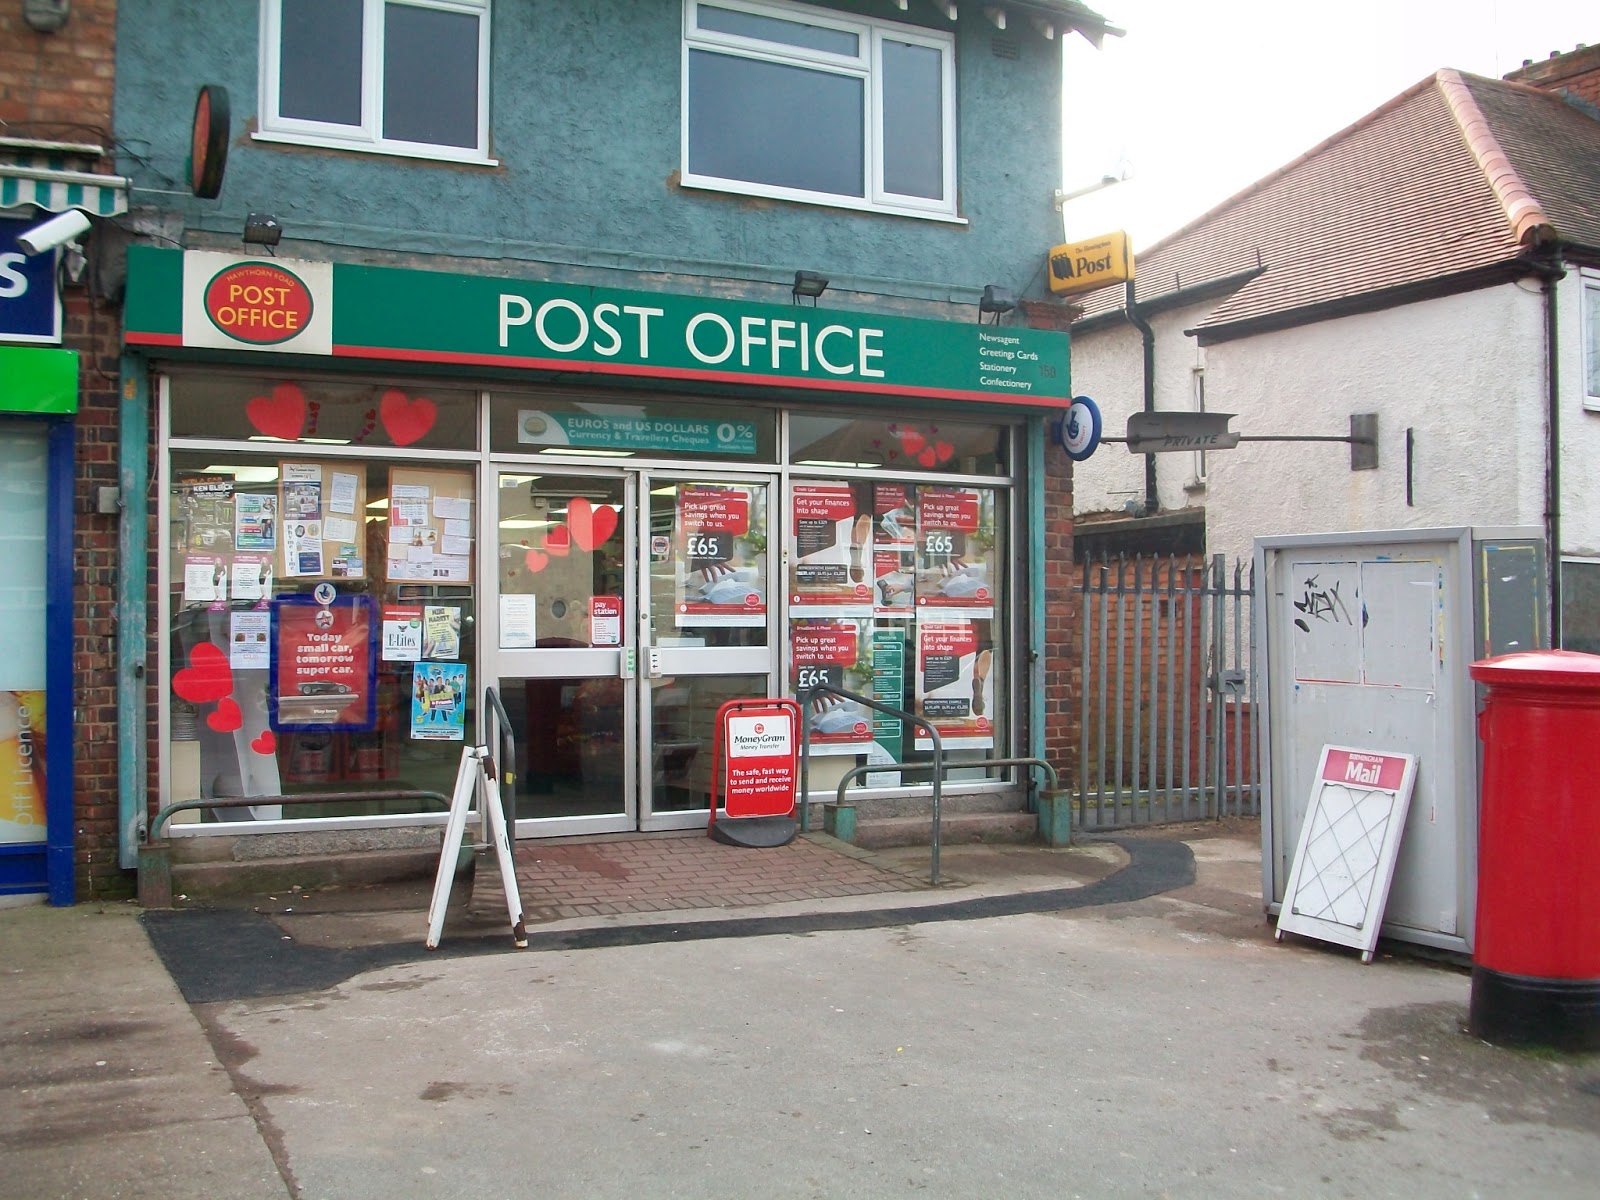 Posted перевести. Post Office. Post Office фото. Слайдер Post Office. Post Office перевод.